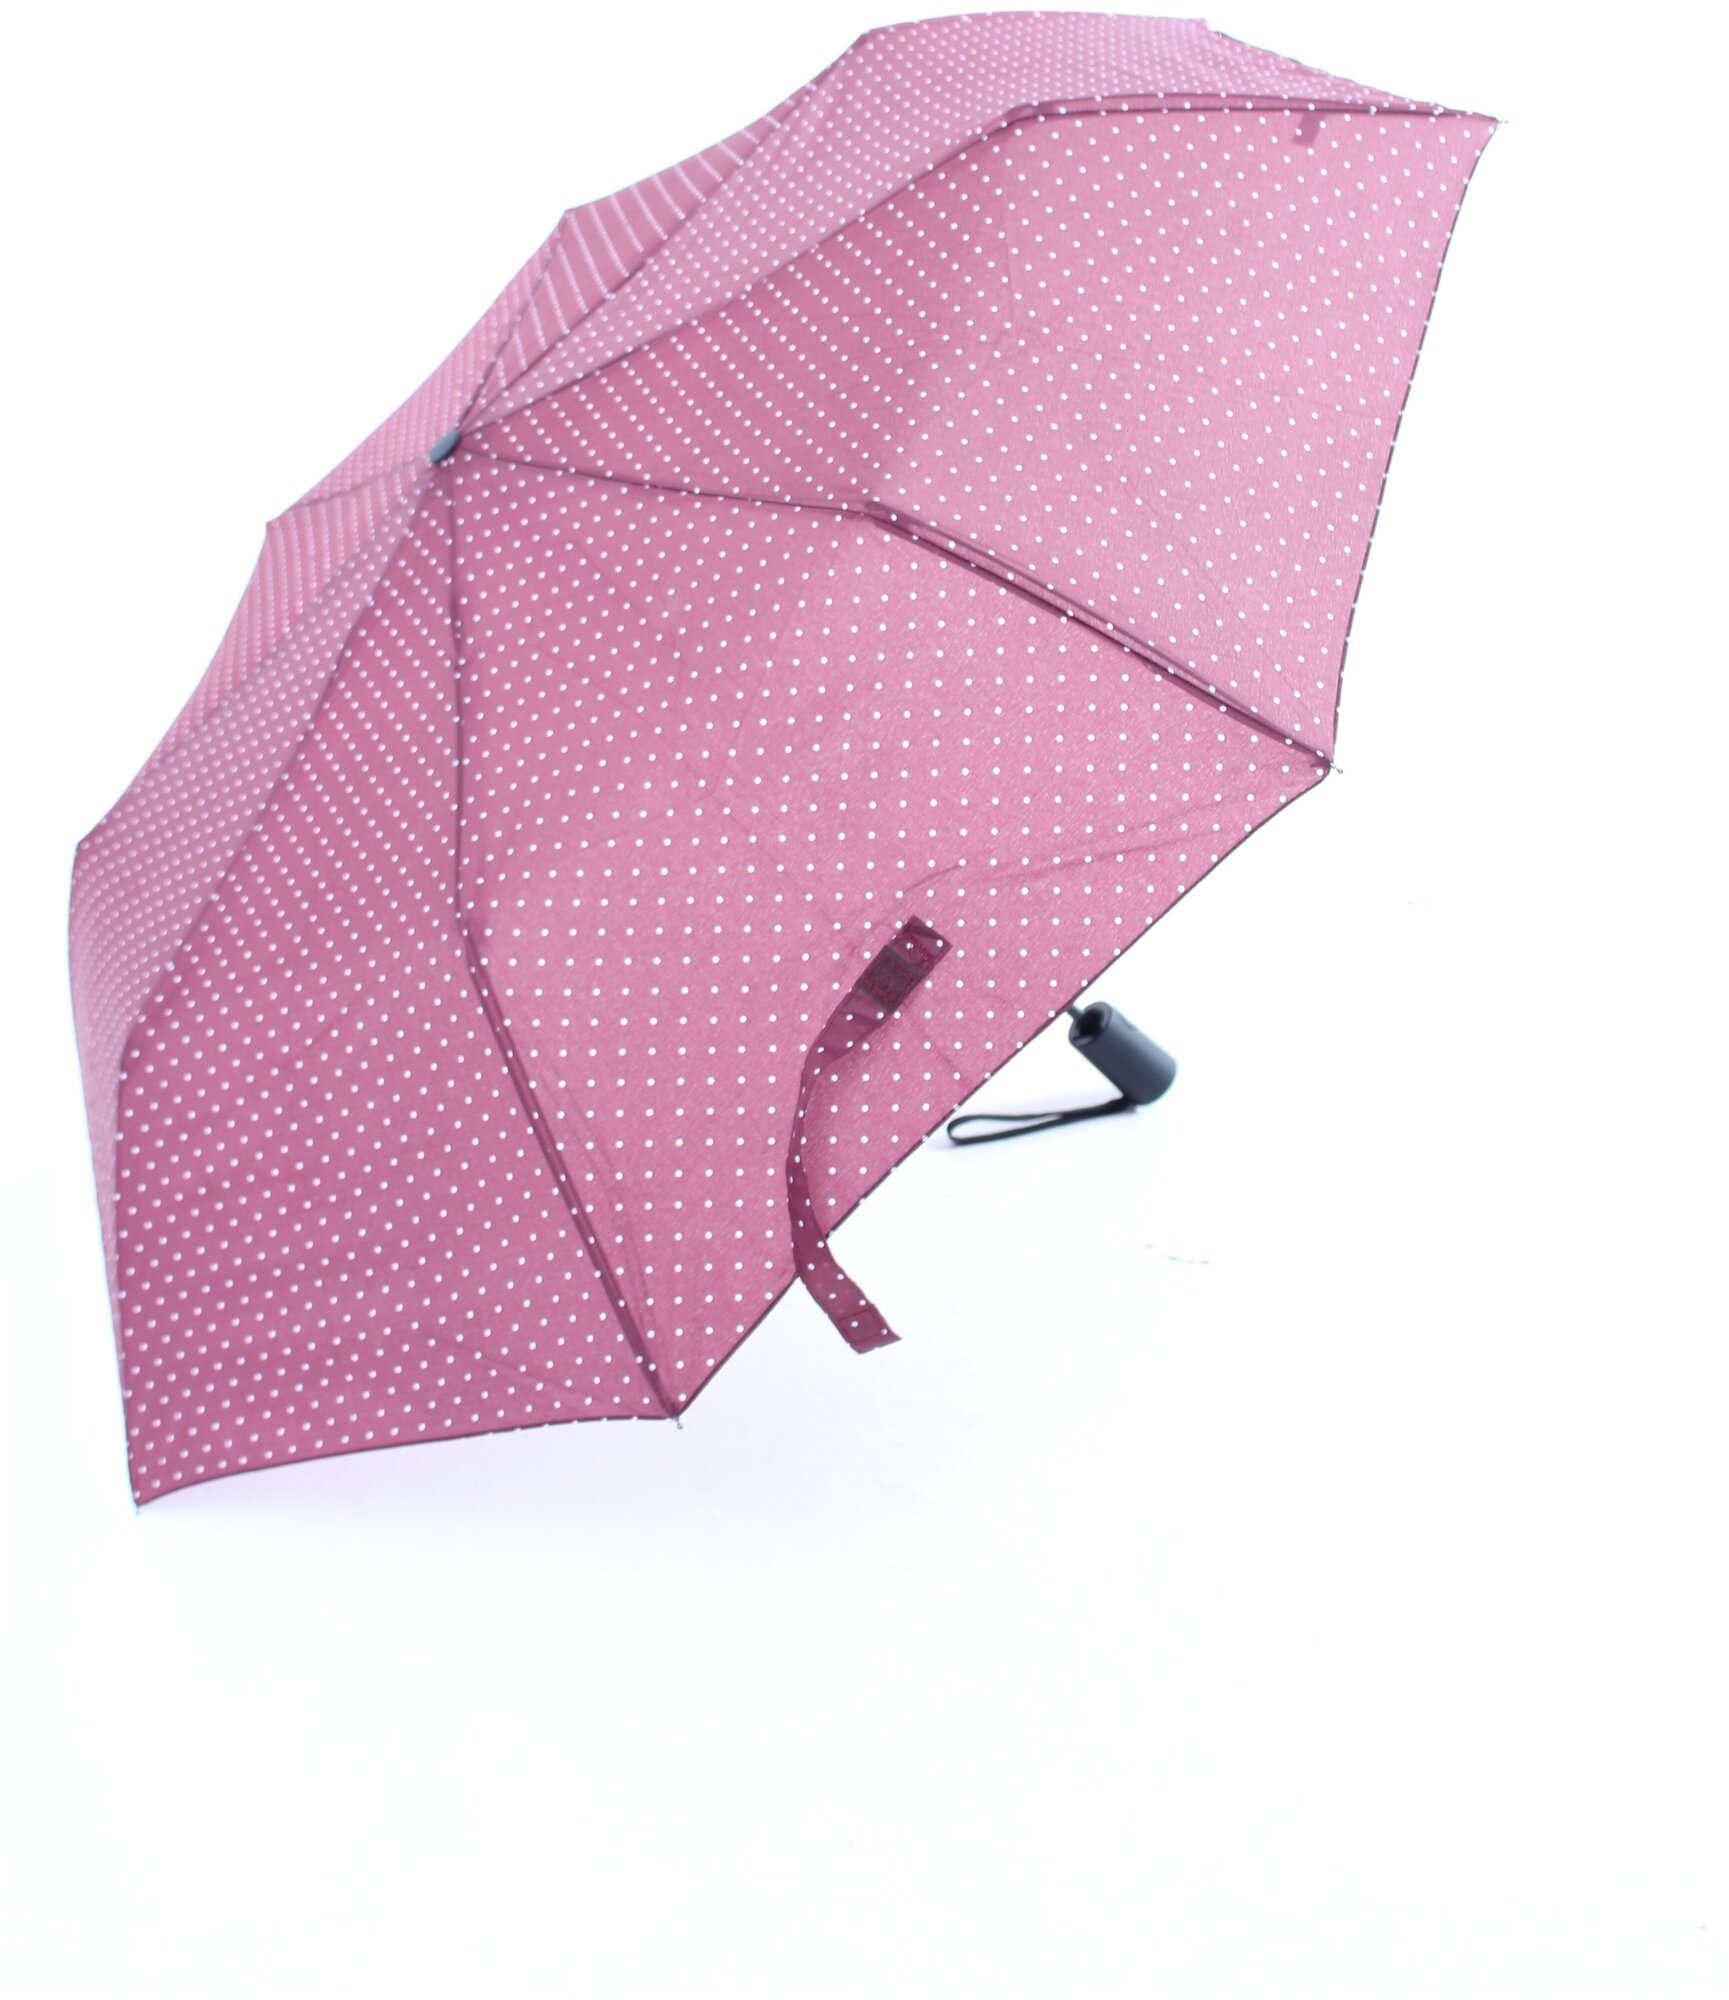 Зонт женский, зонт полуавтомат, AltroMondo 013, складной, прочный, стильный, 8 спиц, красный, мелкий горошек